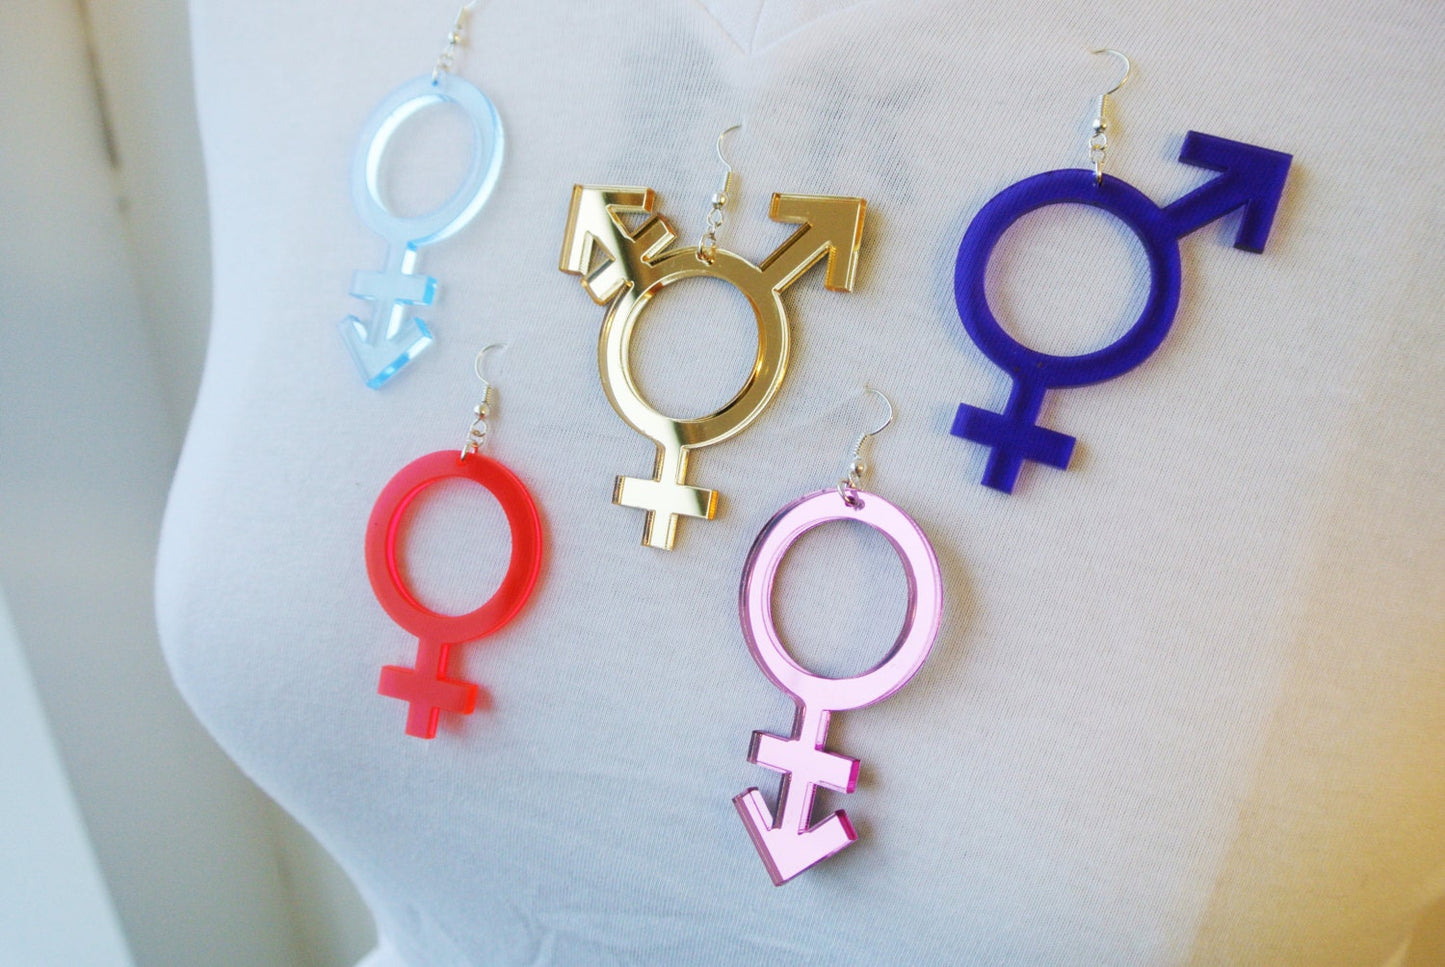 Gender Symbol Necklace